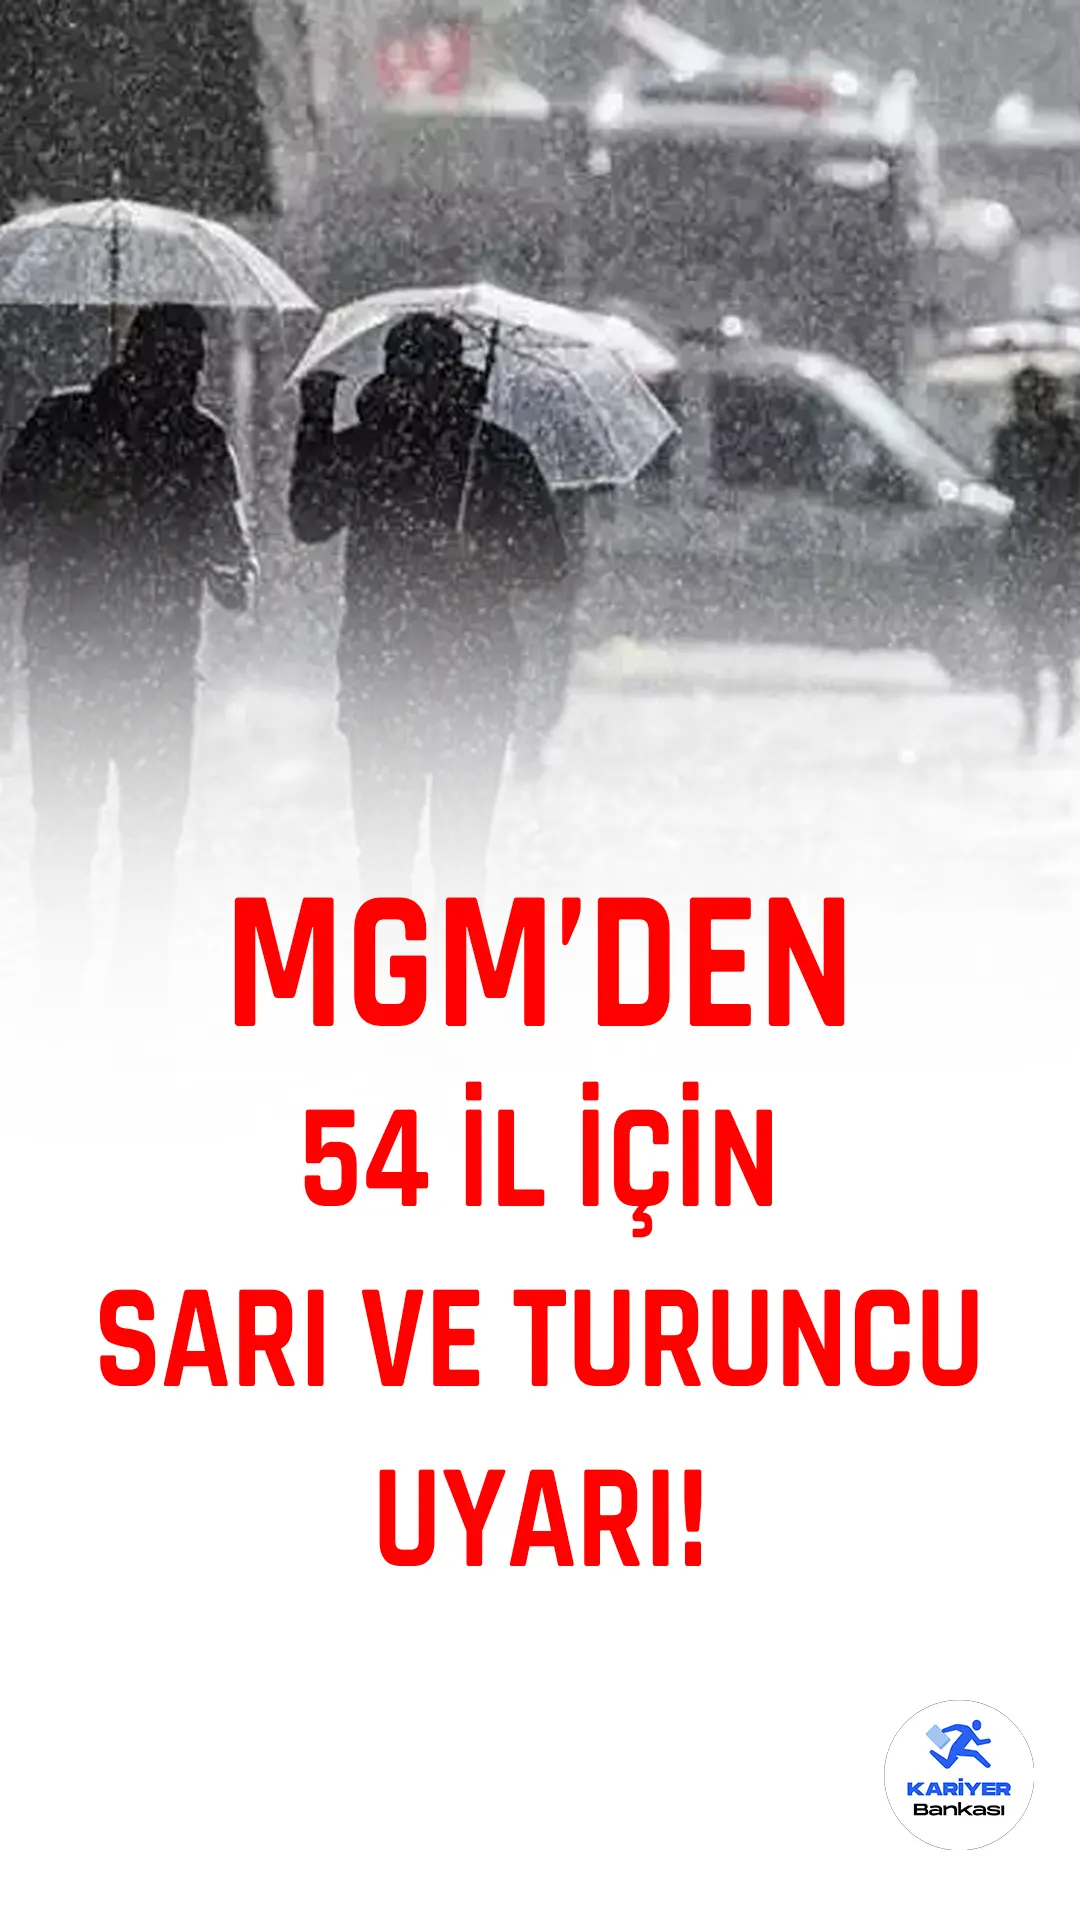 Meteoroloji'den yapılan son değerlendirmeye göre, Türkiye genelinde yoğun yağış ve fırtına uyarısı verildi. 54 il için sarı ve turuncu uyarı yayımlandı. İşte detaylar...